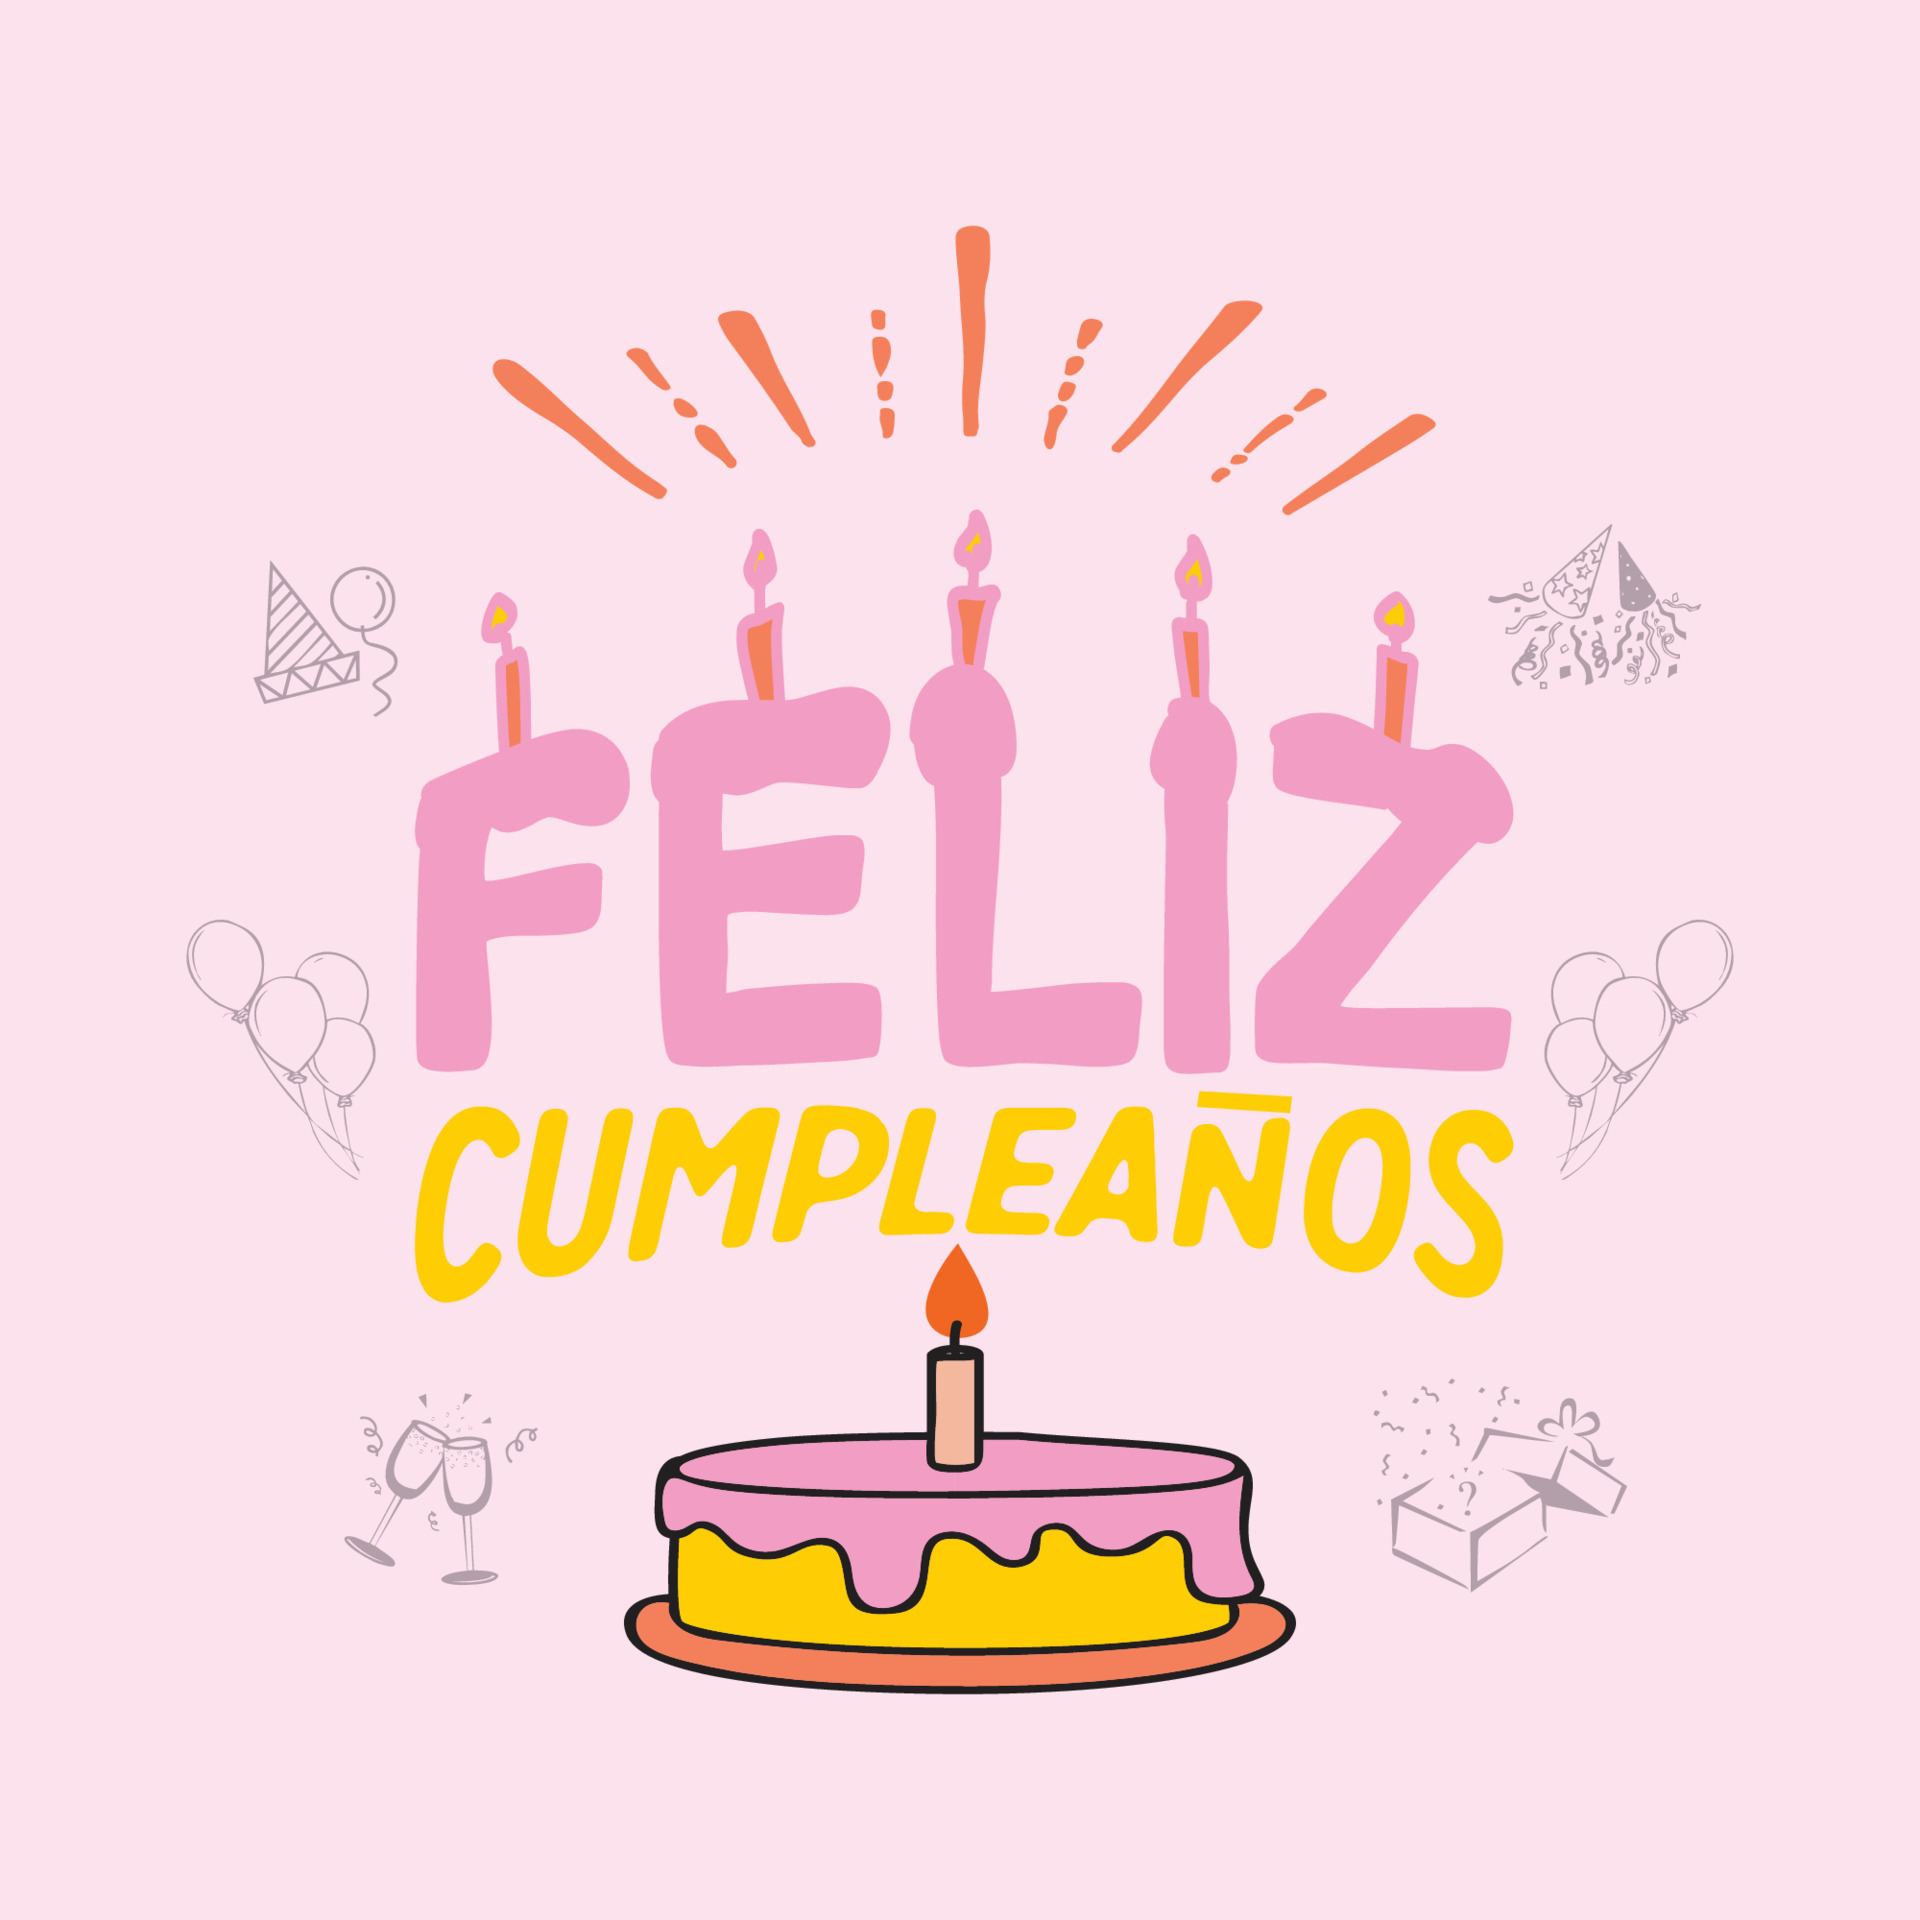 joyeux anniversaire feliz cumpleanos lettrage en espagnol 18872669 -  Telecharger Vectoriel Gratuit, Clipart Graphique, Vecteur Dessins et  Pictogramme Gratuit